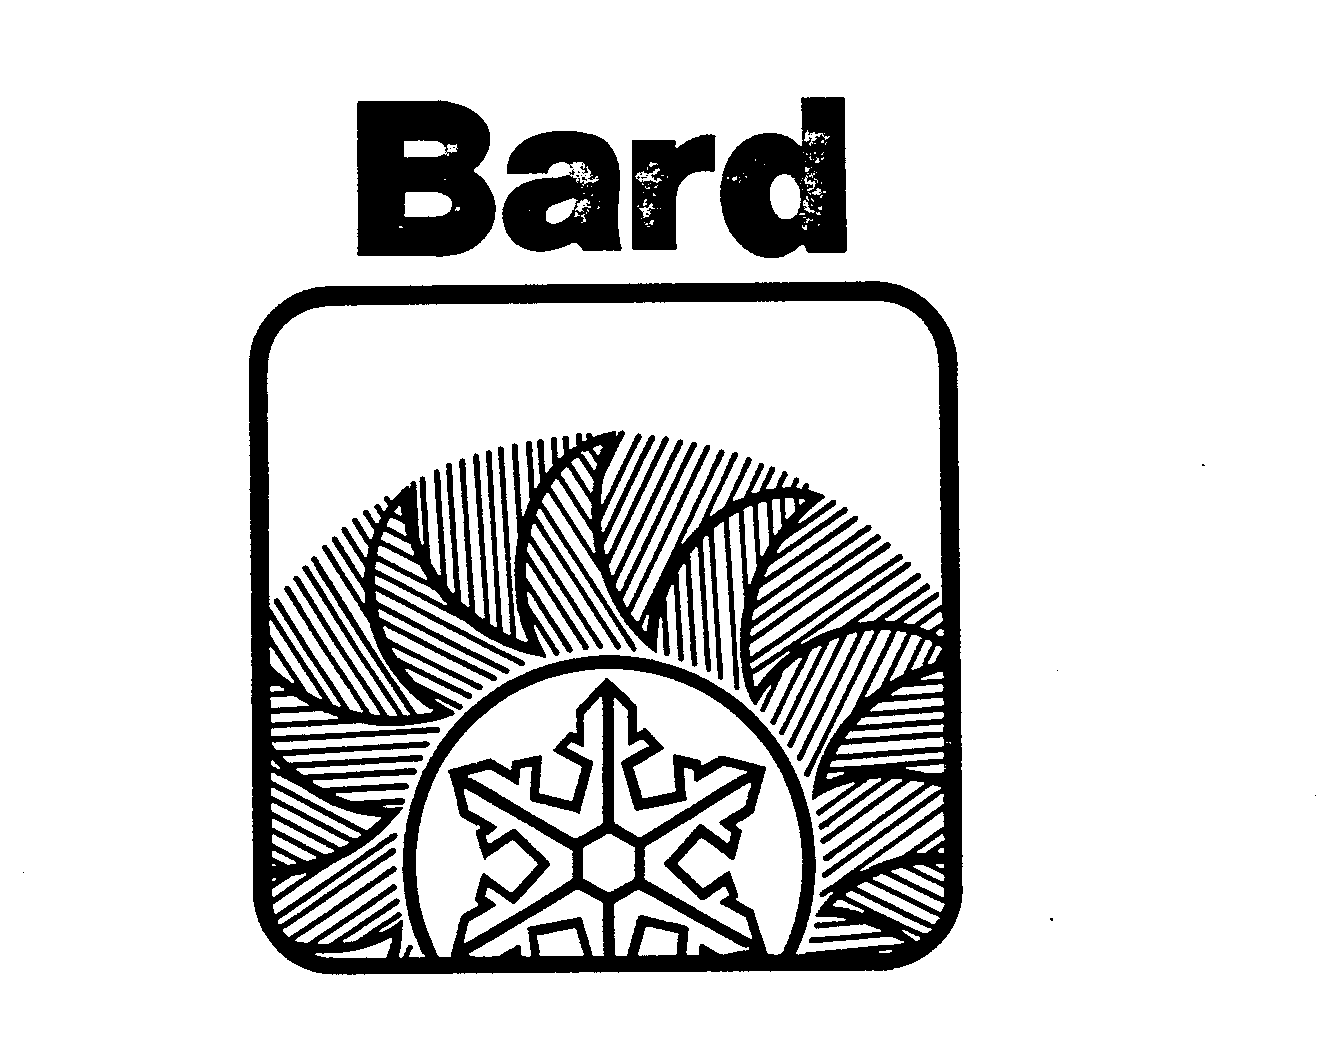 Trademark Logo BARD